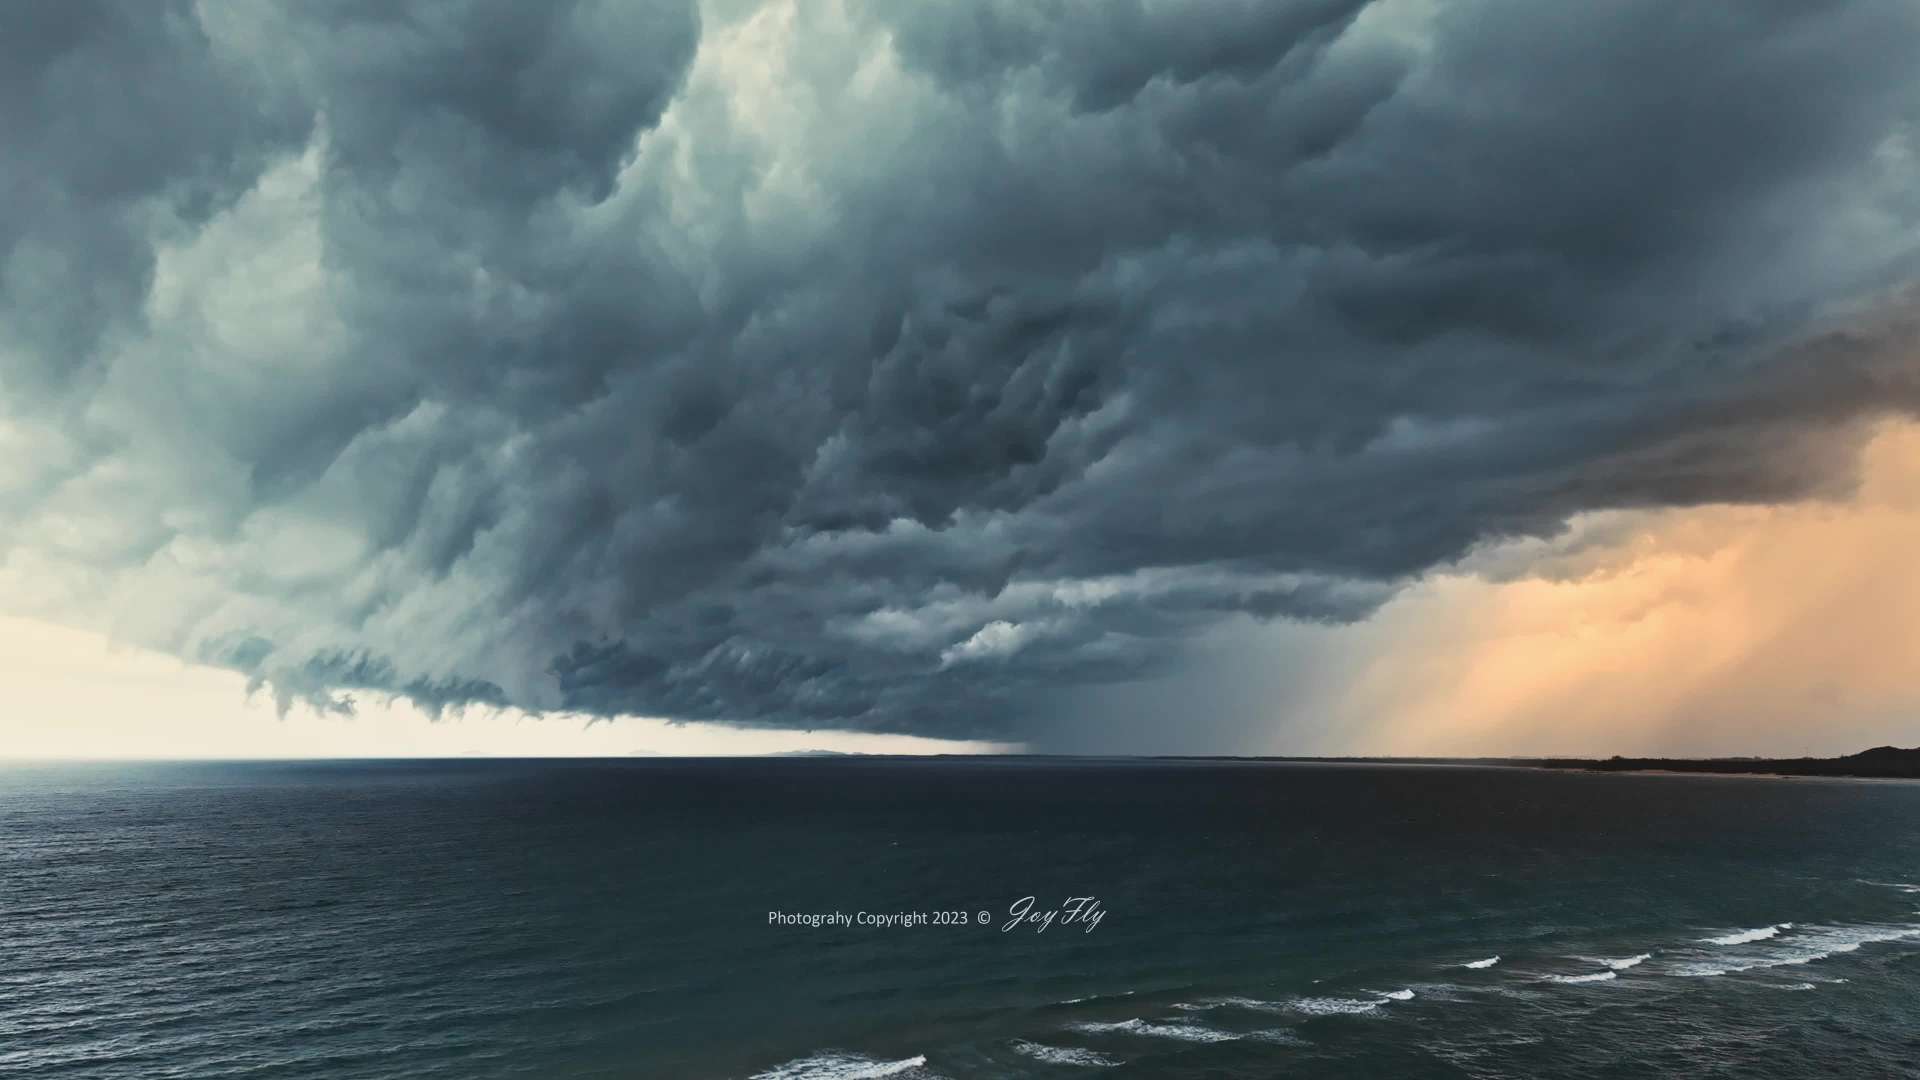 2023年7月1日在万宁海边记录的一场突发的强对流天气